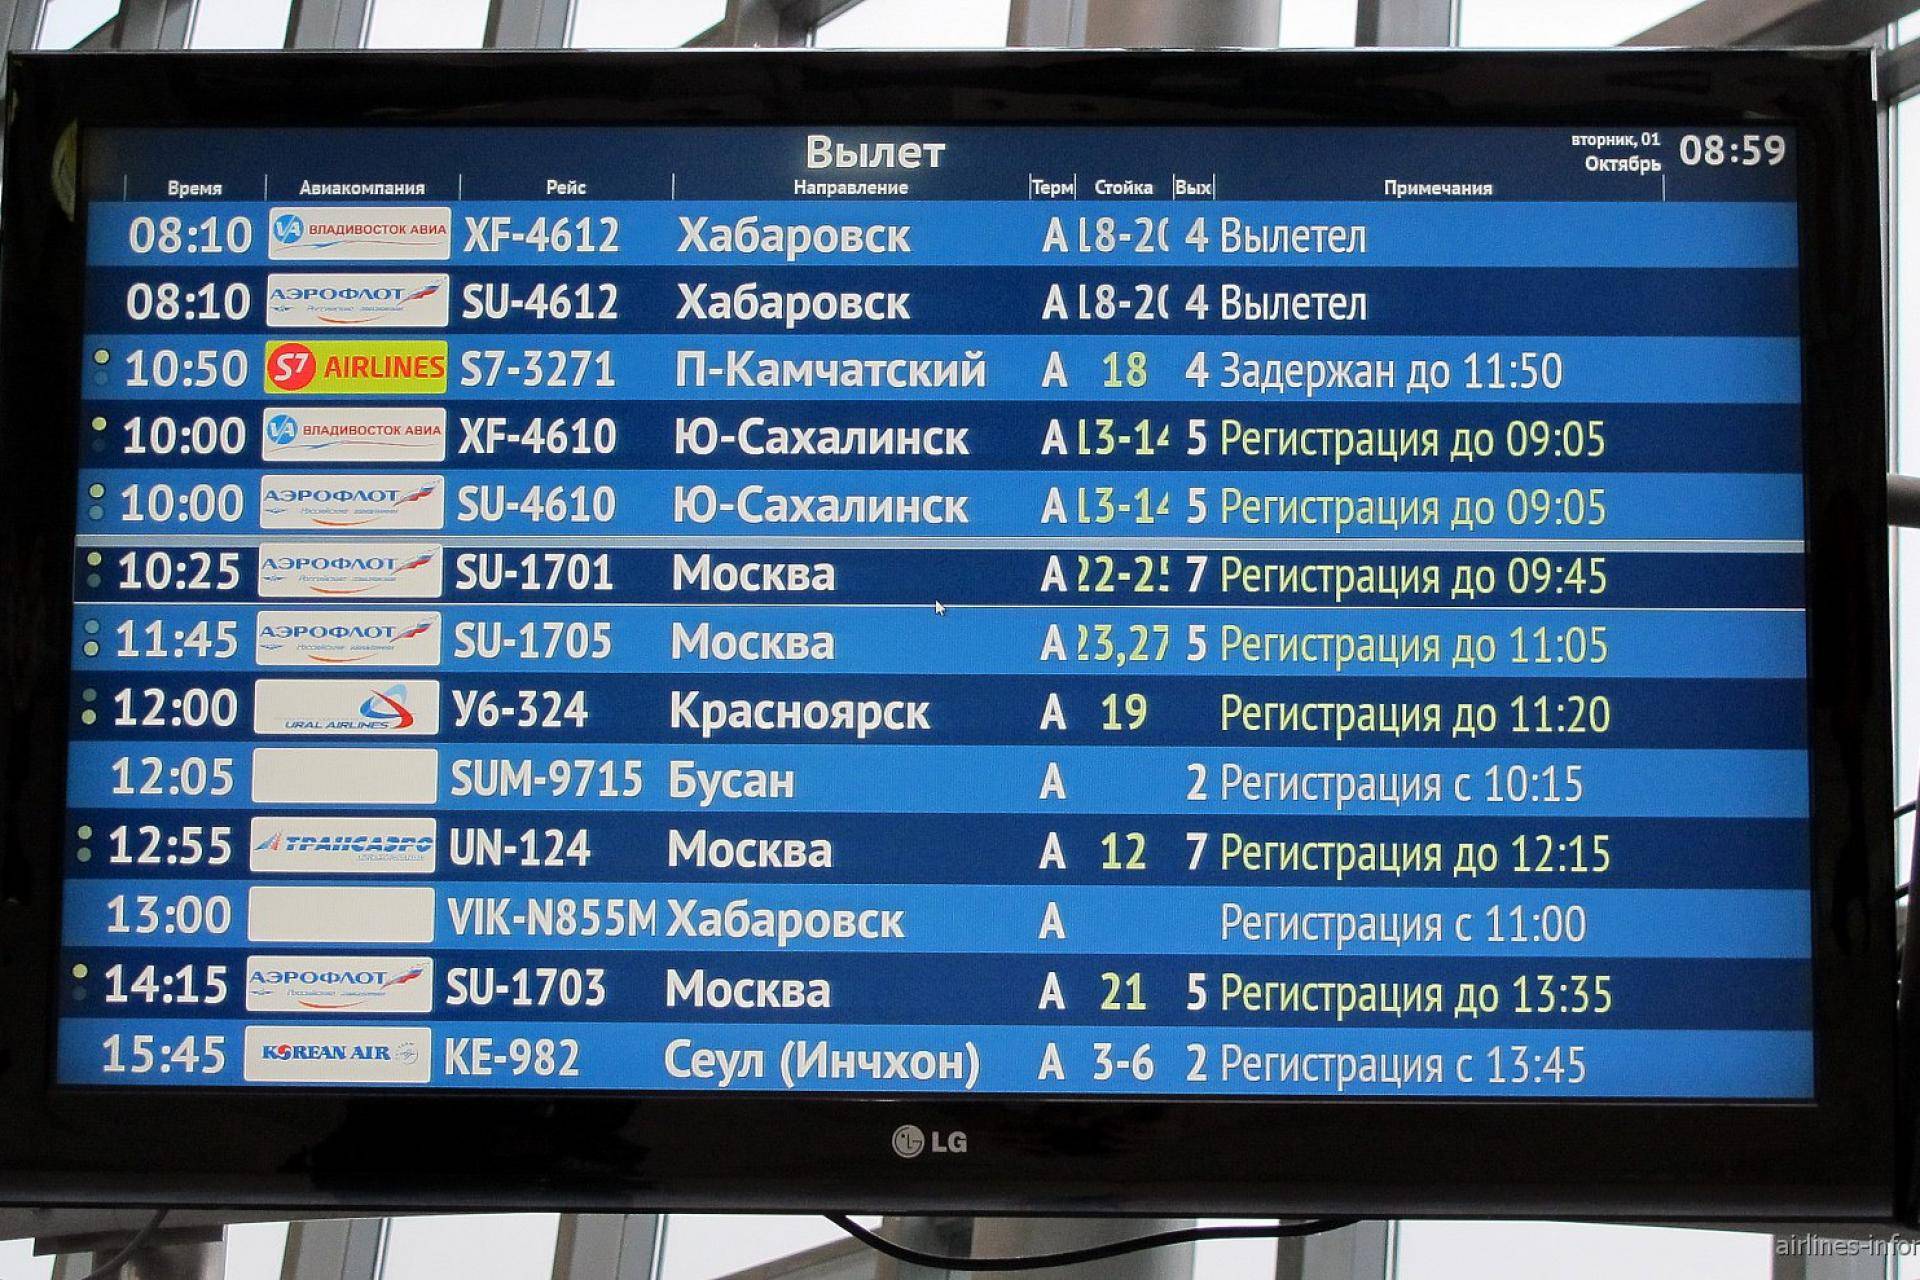 Регистрация на рейс — за сколько приезжать в аэропорт?